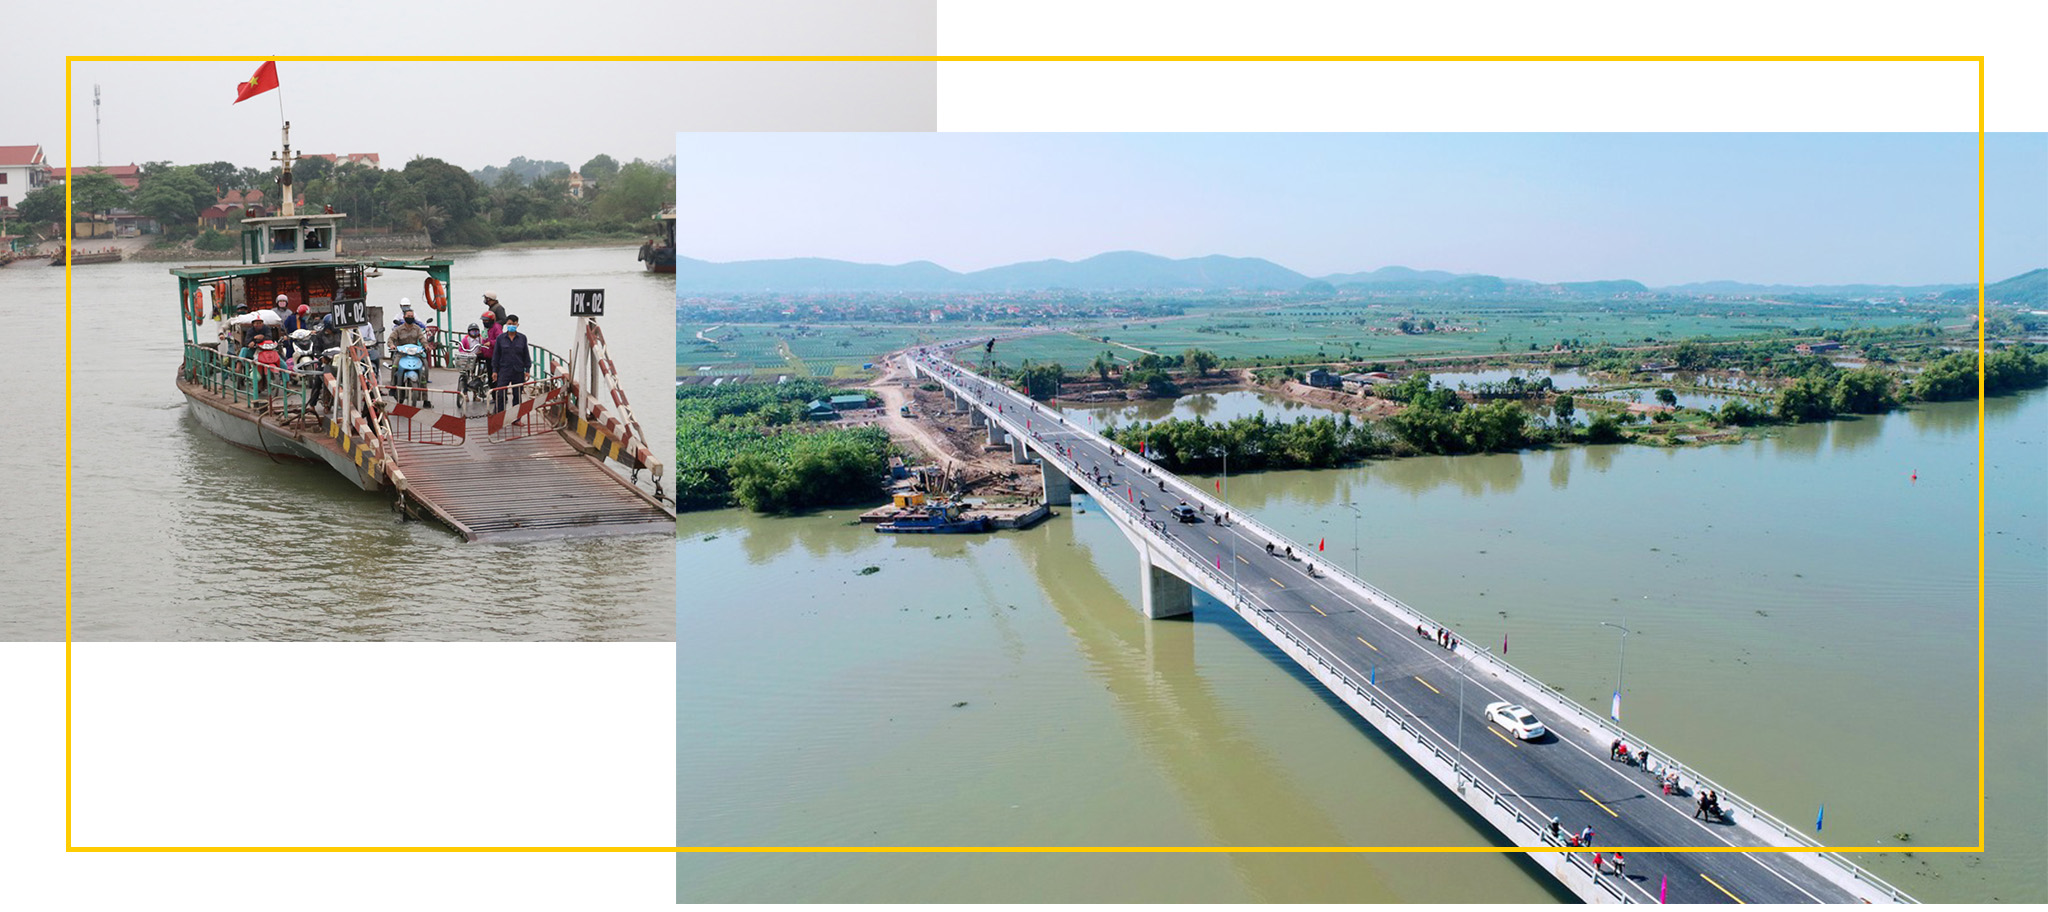 Cầu Triều - Cây cầu nối liền Đông Triều (Quảng Ninh) và Kinh Môn (Hải Dương) đã chính thức thông xe từ 1/1/2021, thay thế cho phà Triều trước đây